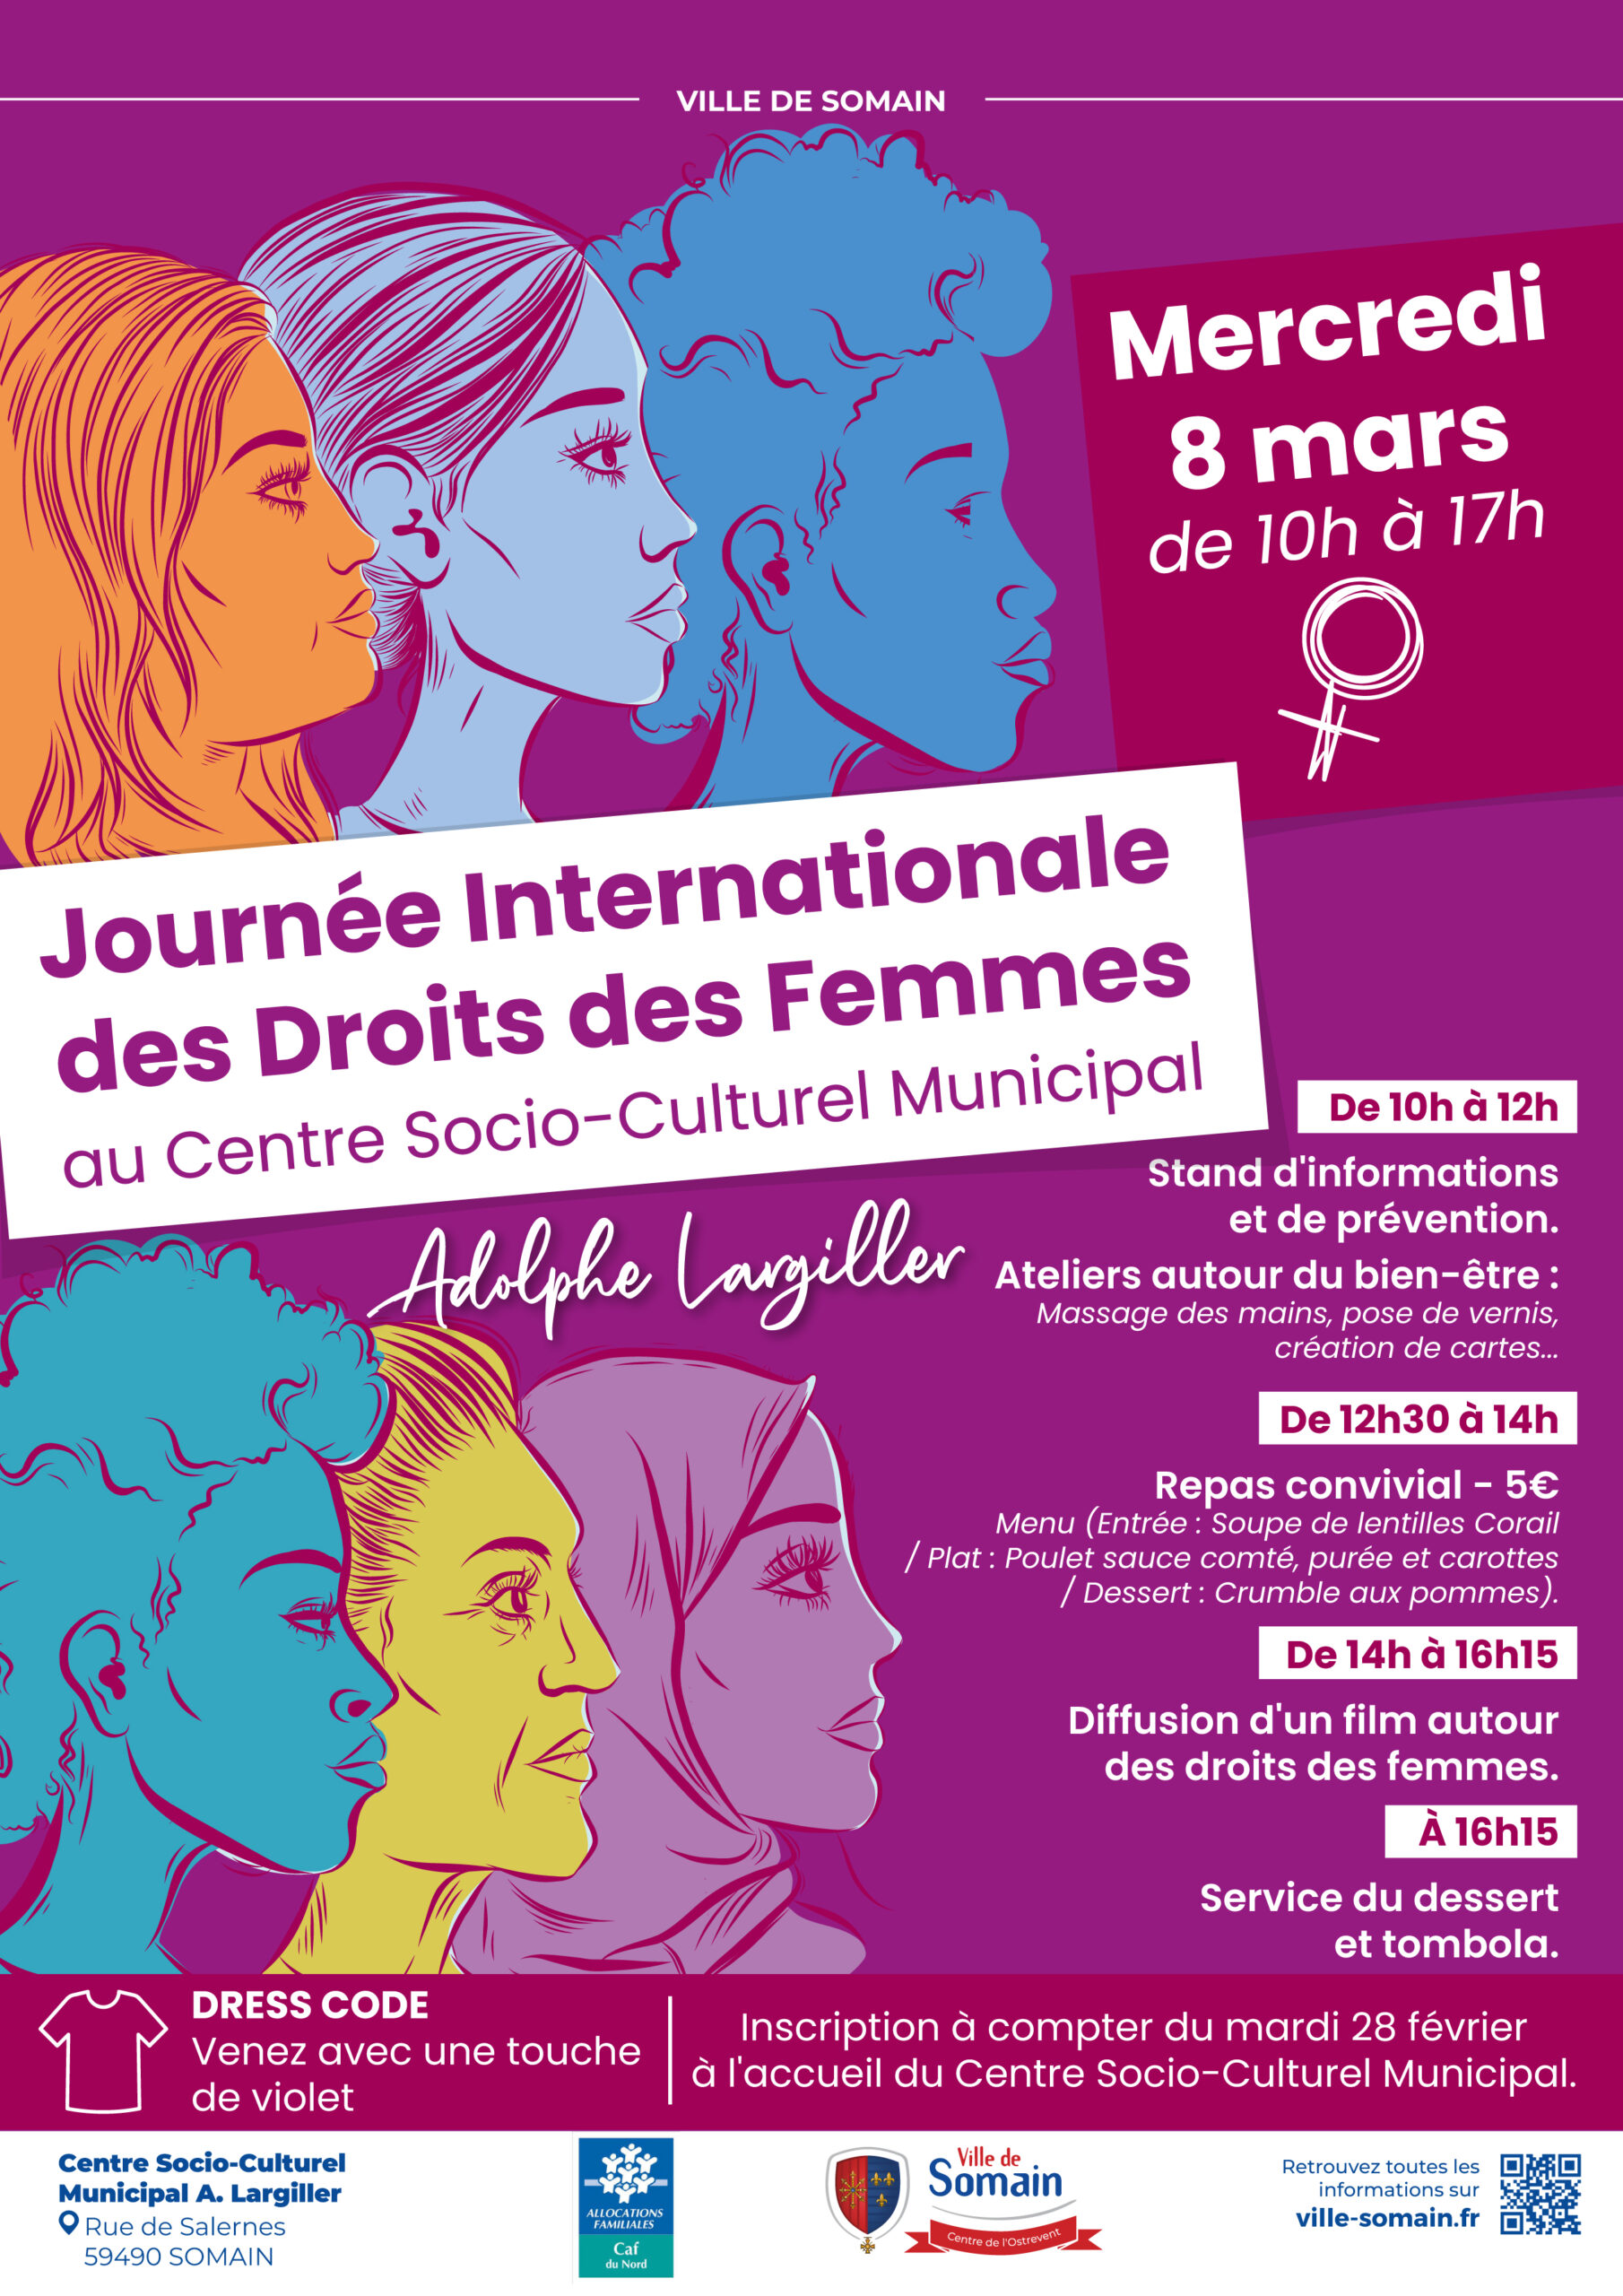 Journée internationale des droits des femmes au C.S.C.M. 8 mars